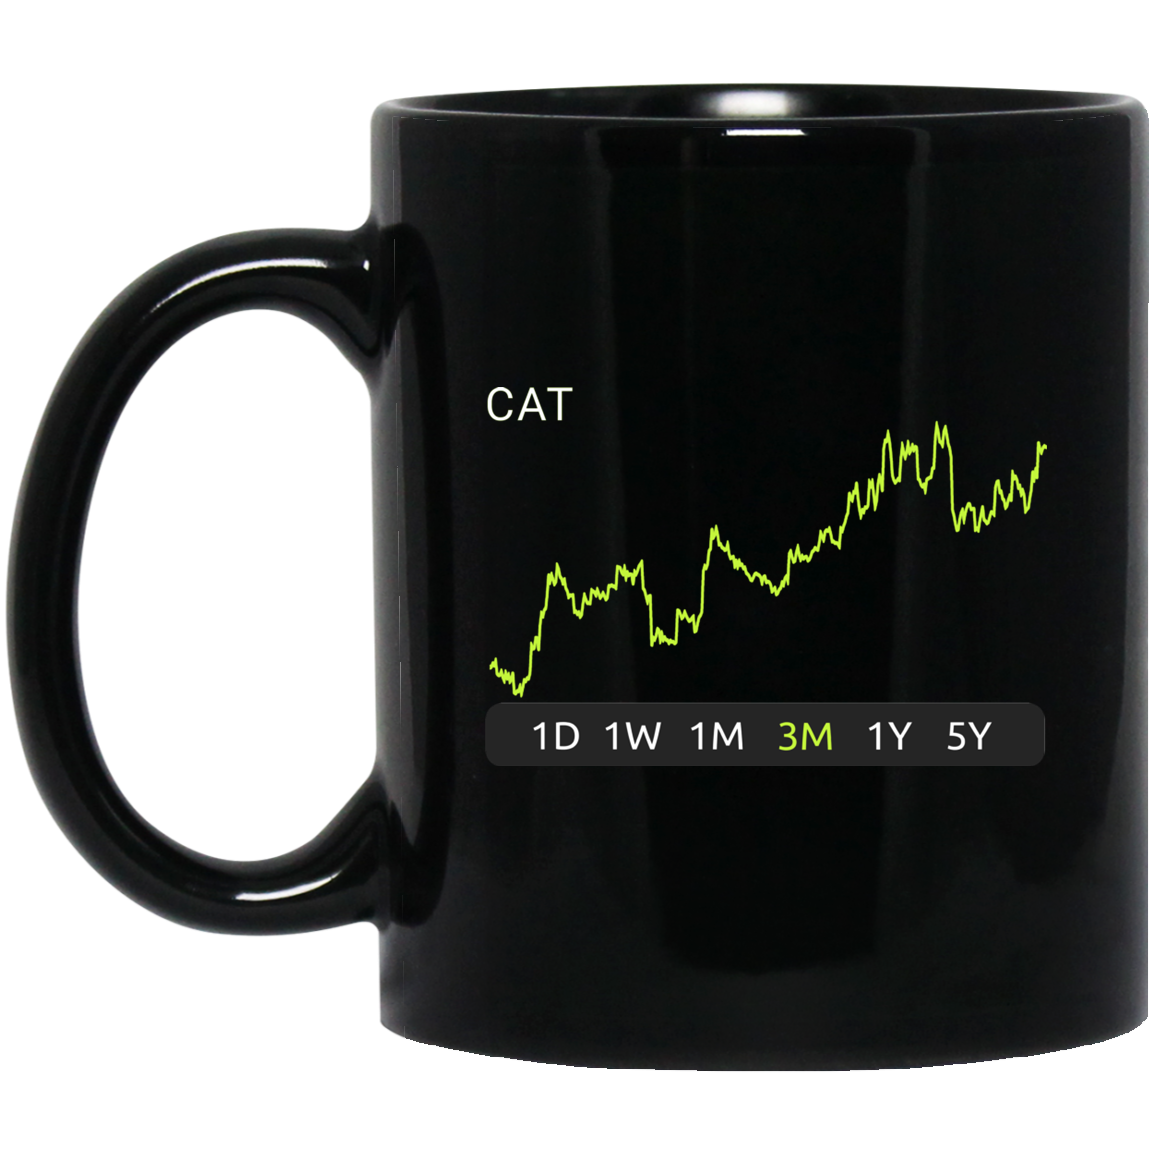 CAT Stock 3m Mug